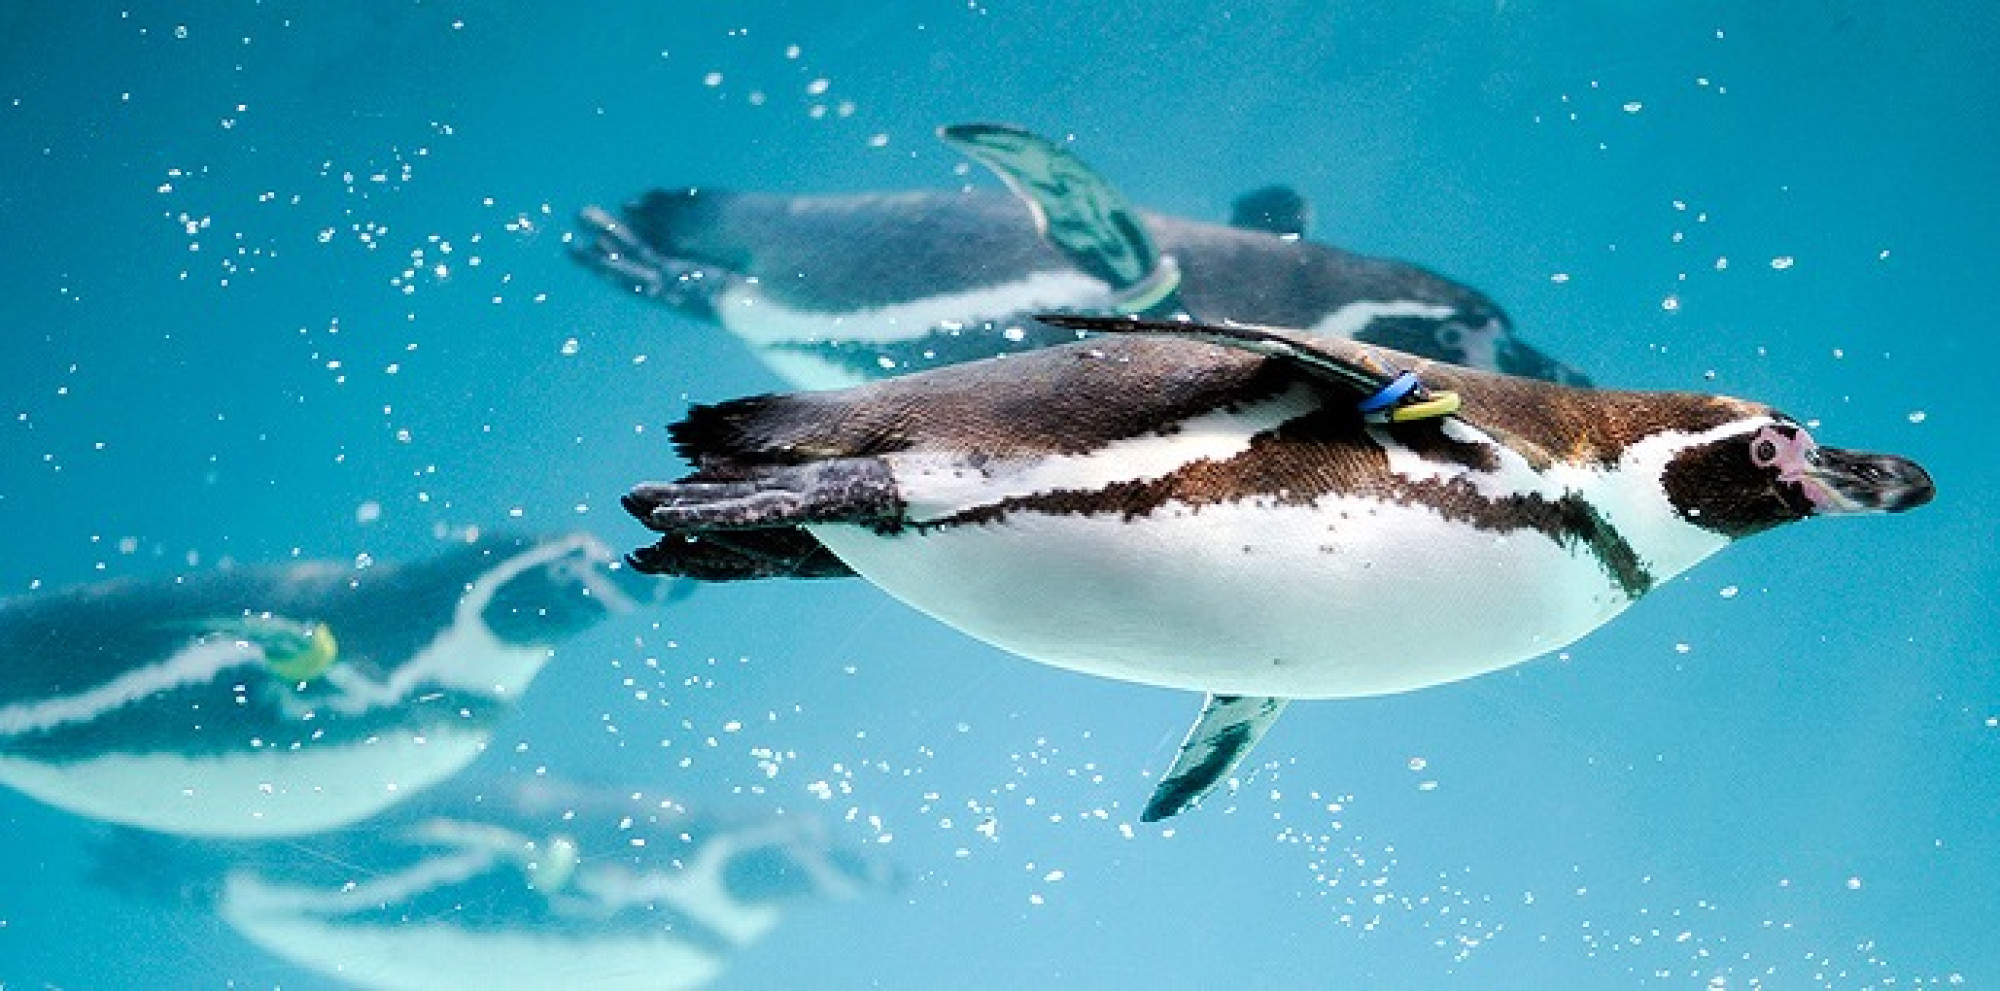 葛西臨海水族園のペンギン達 キャステル Castel ディズニー情報